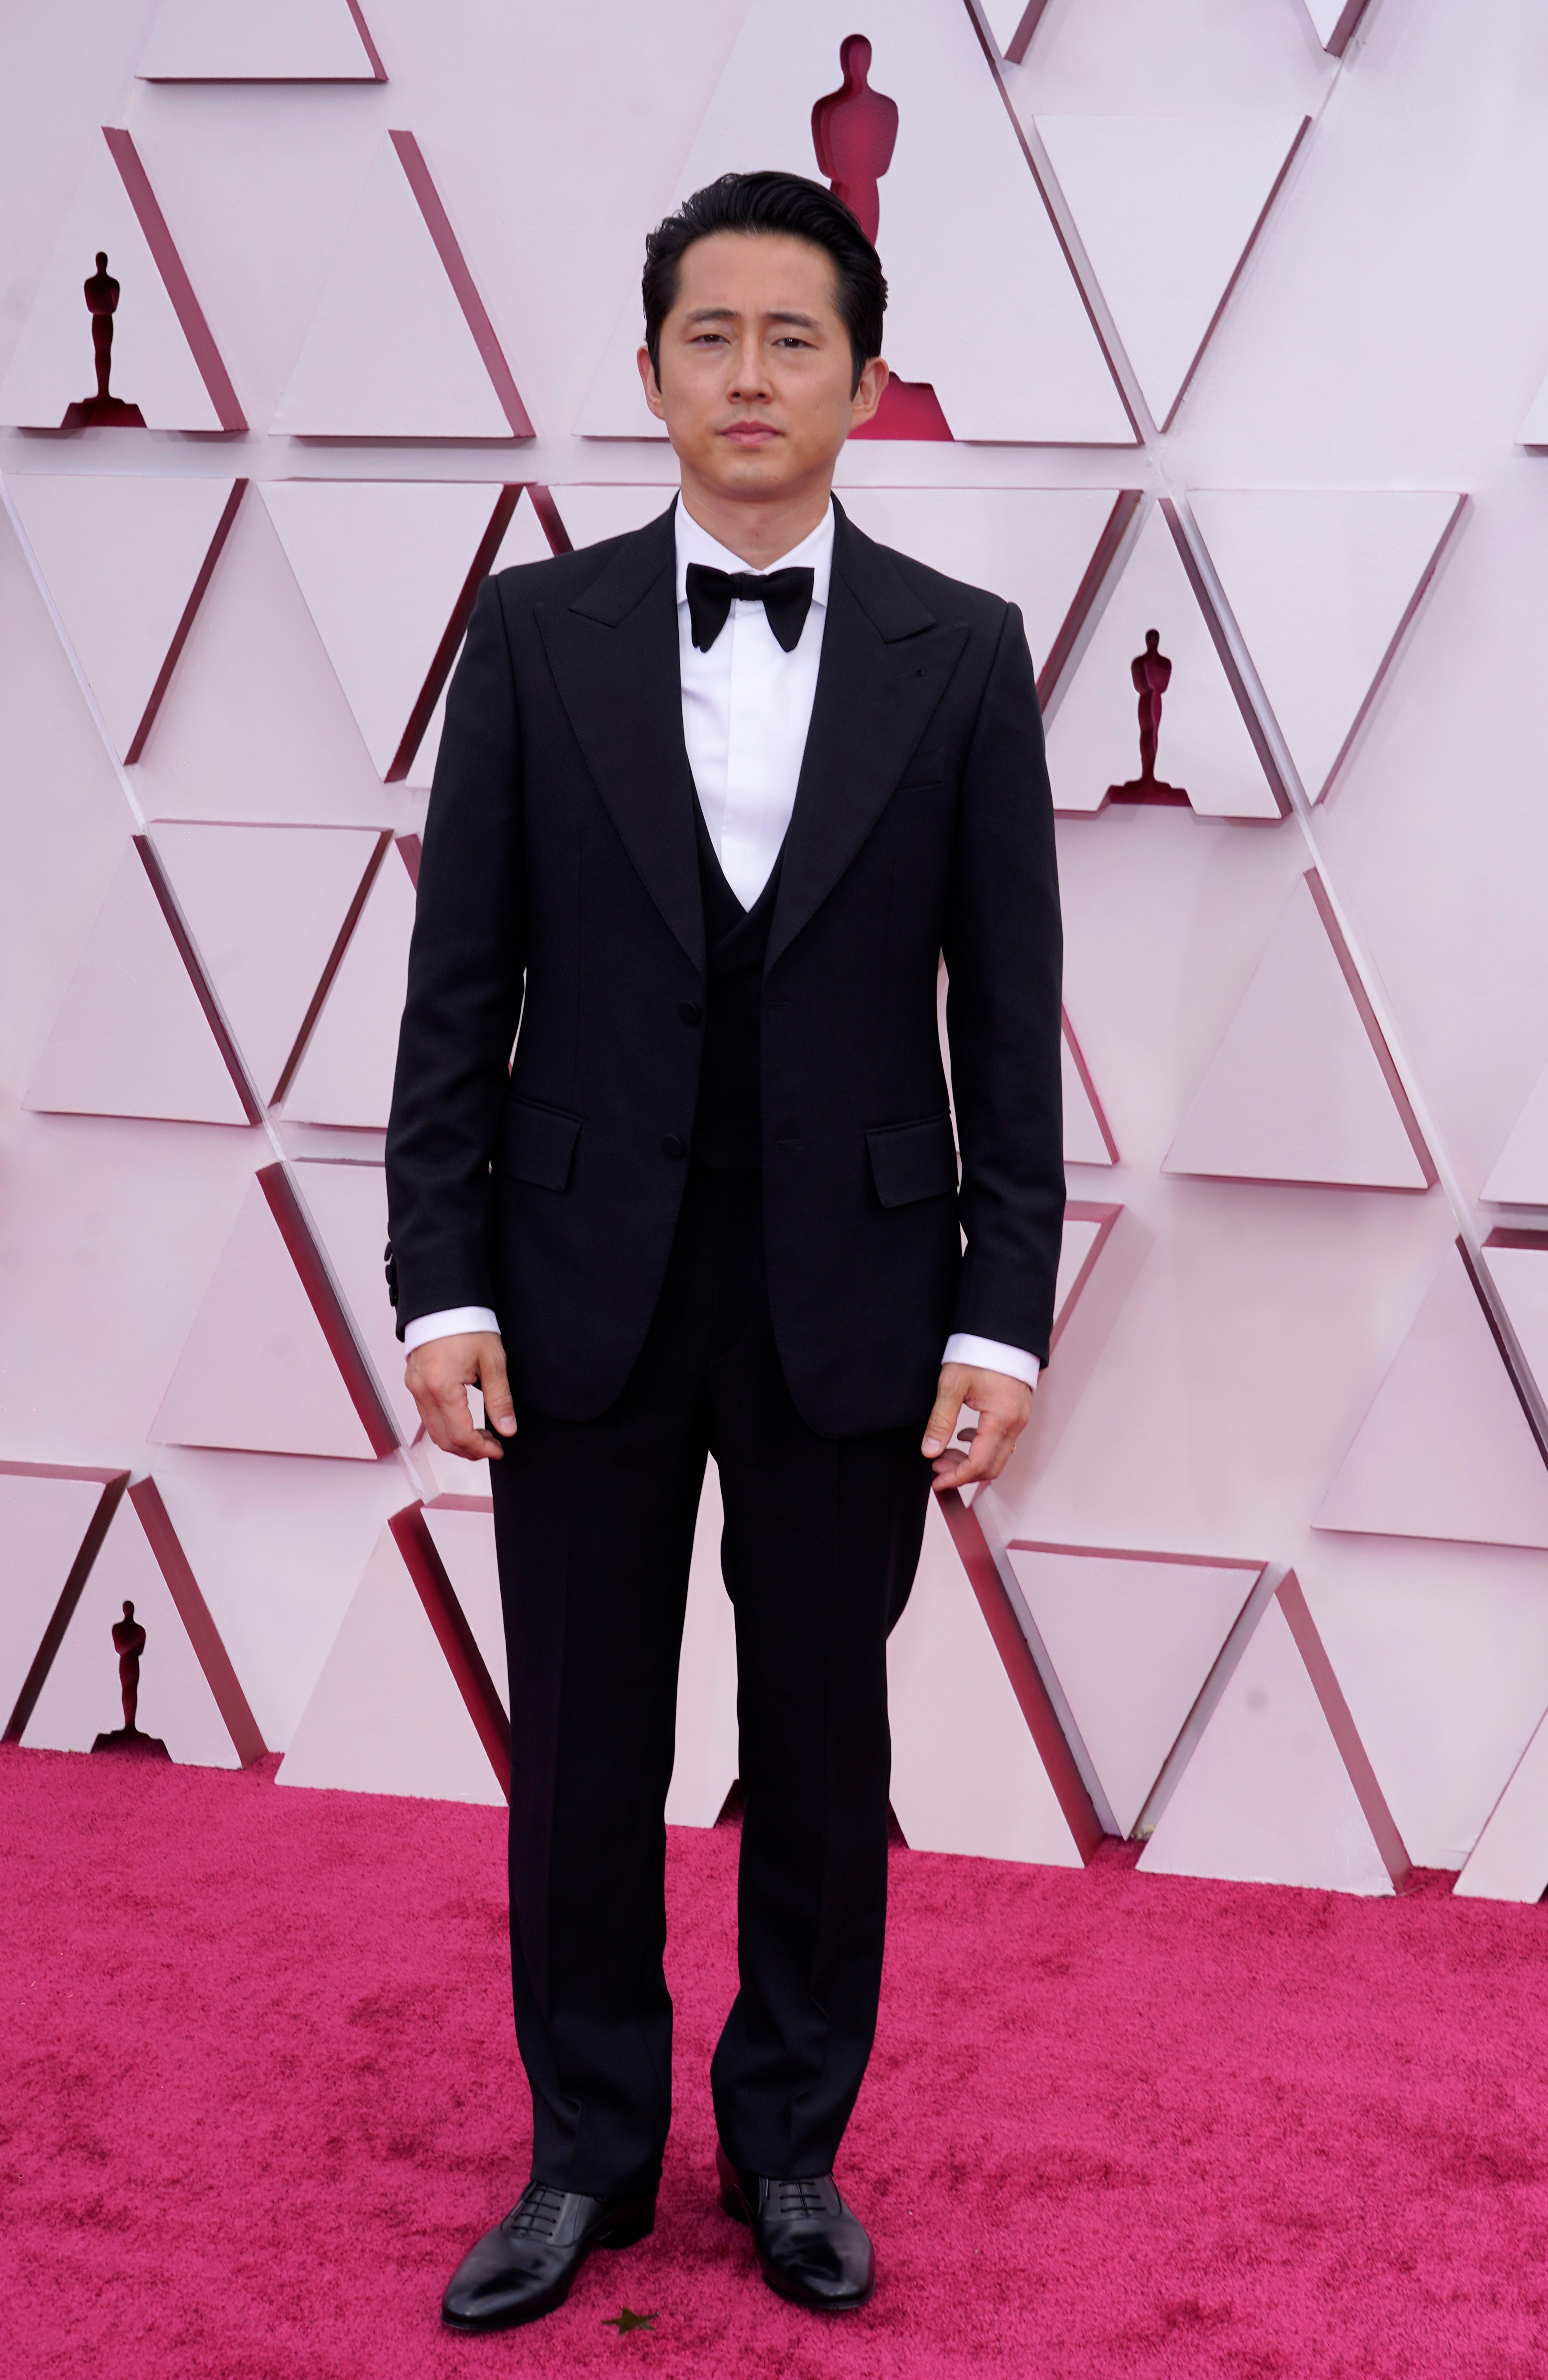 Steven Yeun at the 93rd Academy Awards